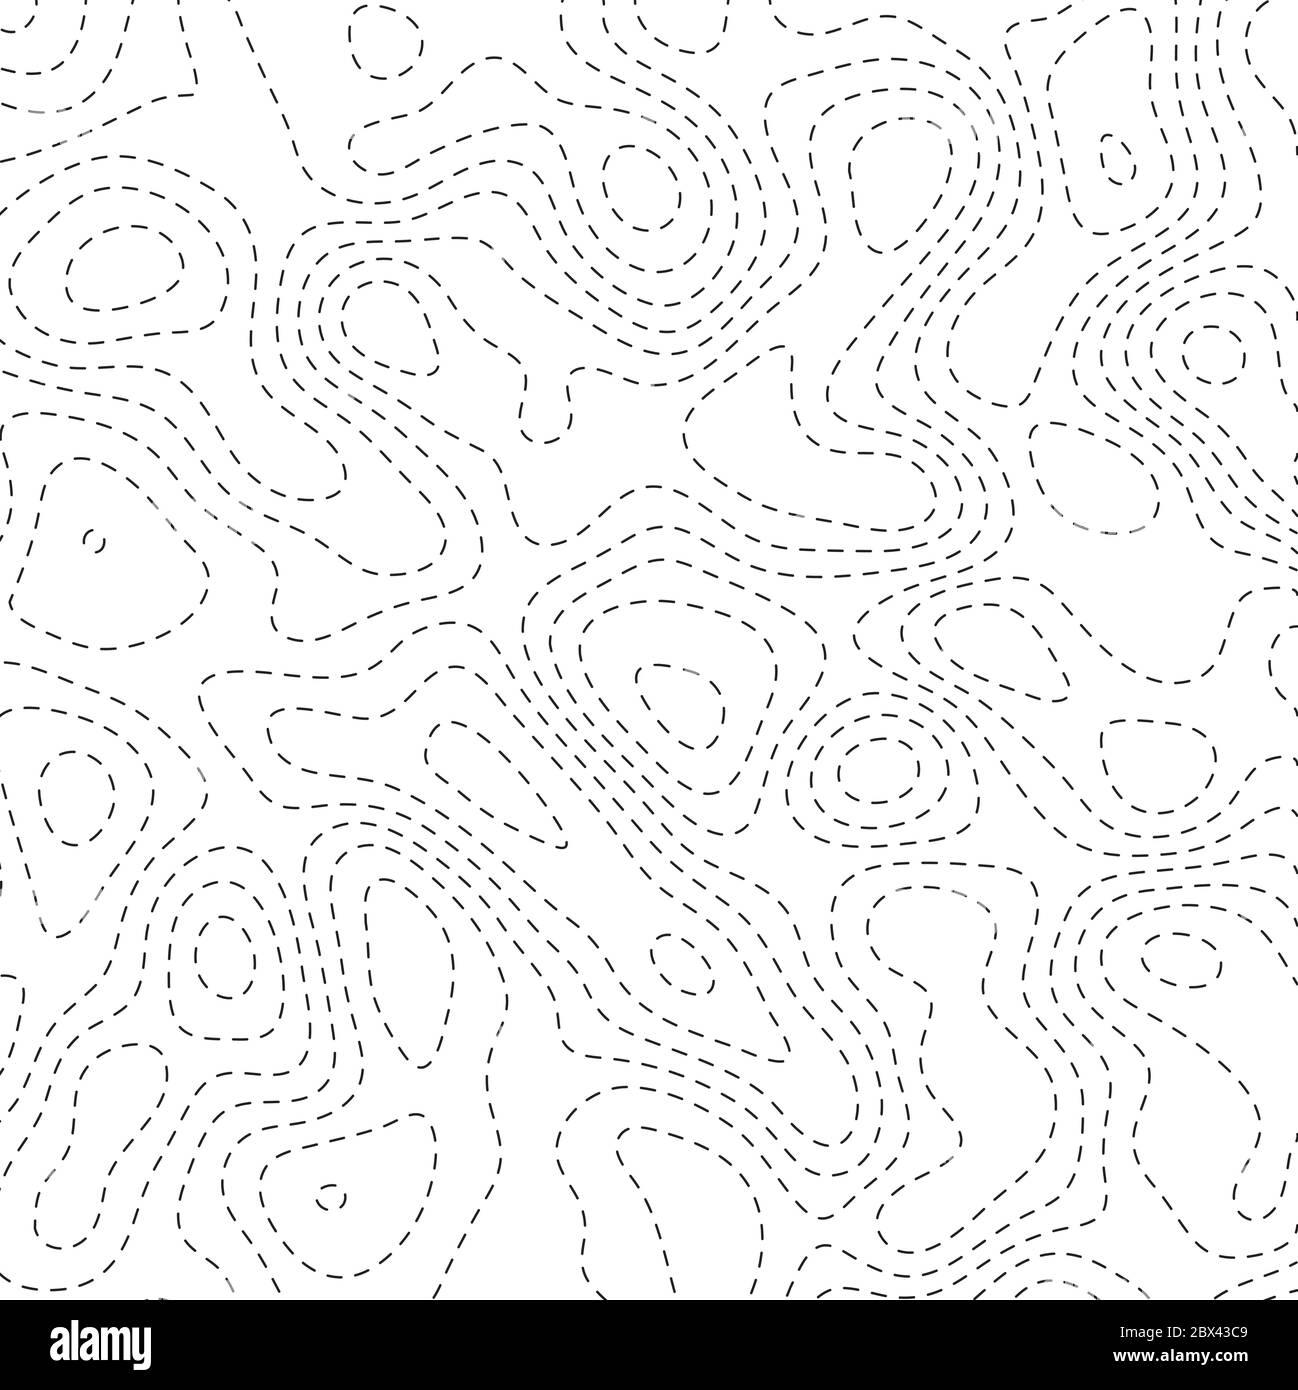 Abstrakte topoghrapische Karte. Dünne schwarze gestrichelte Konturlinien auf weißem Hintergrund. Vektorgrafik. Stock Vektor